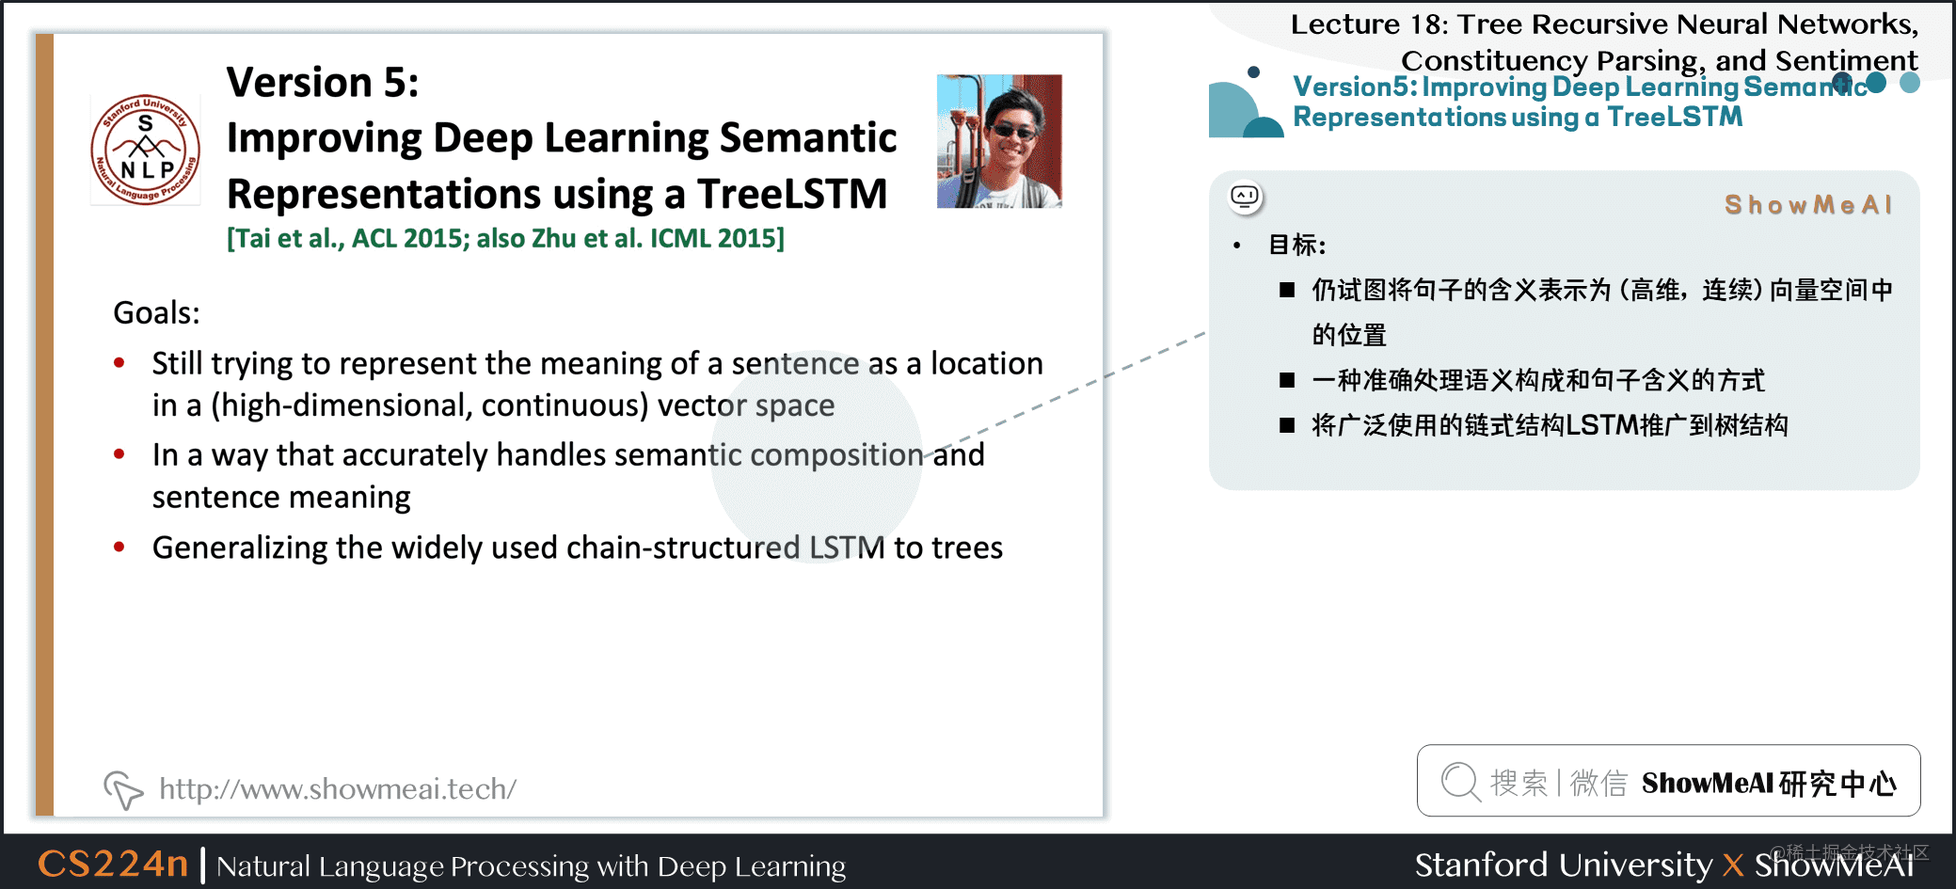 版本5: Improving Deep Learning Semantic Representations using a TreeLSTM